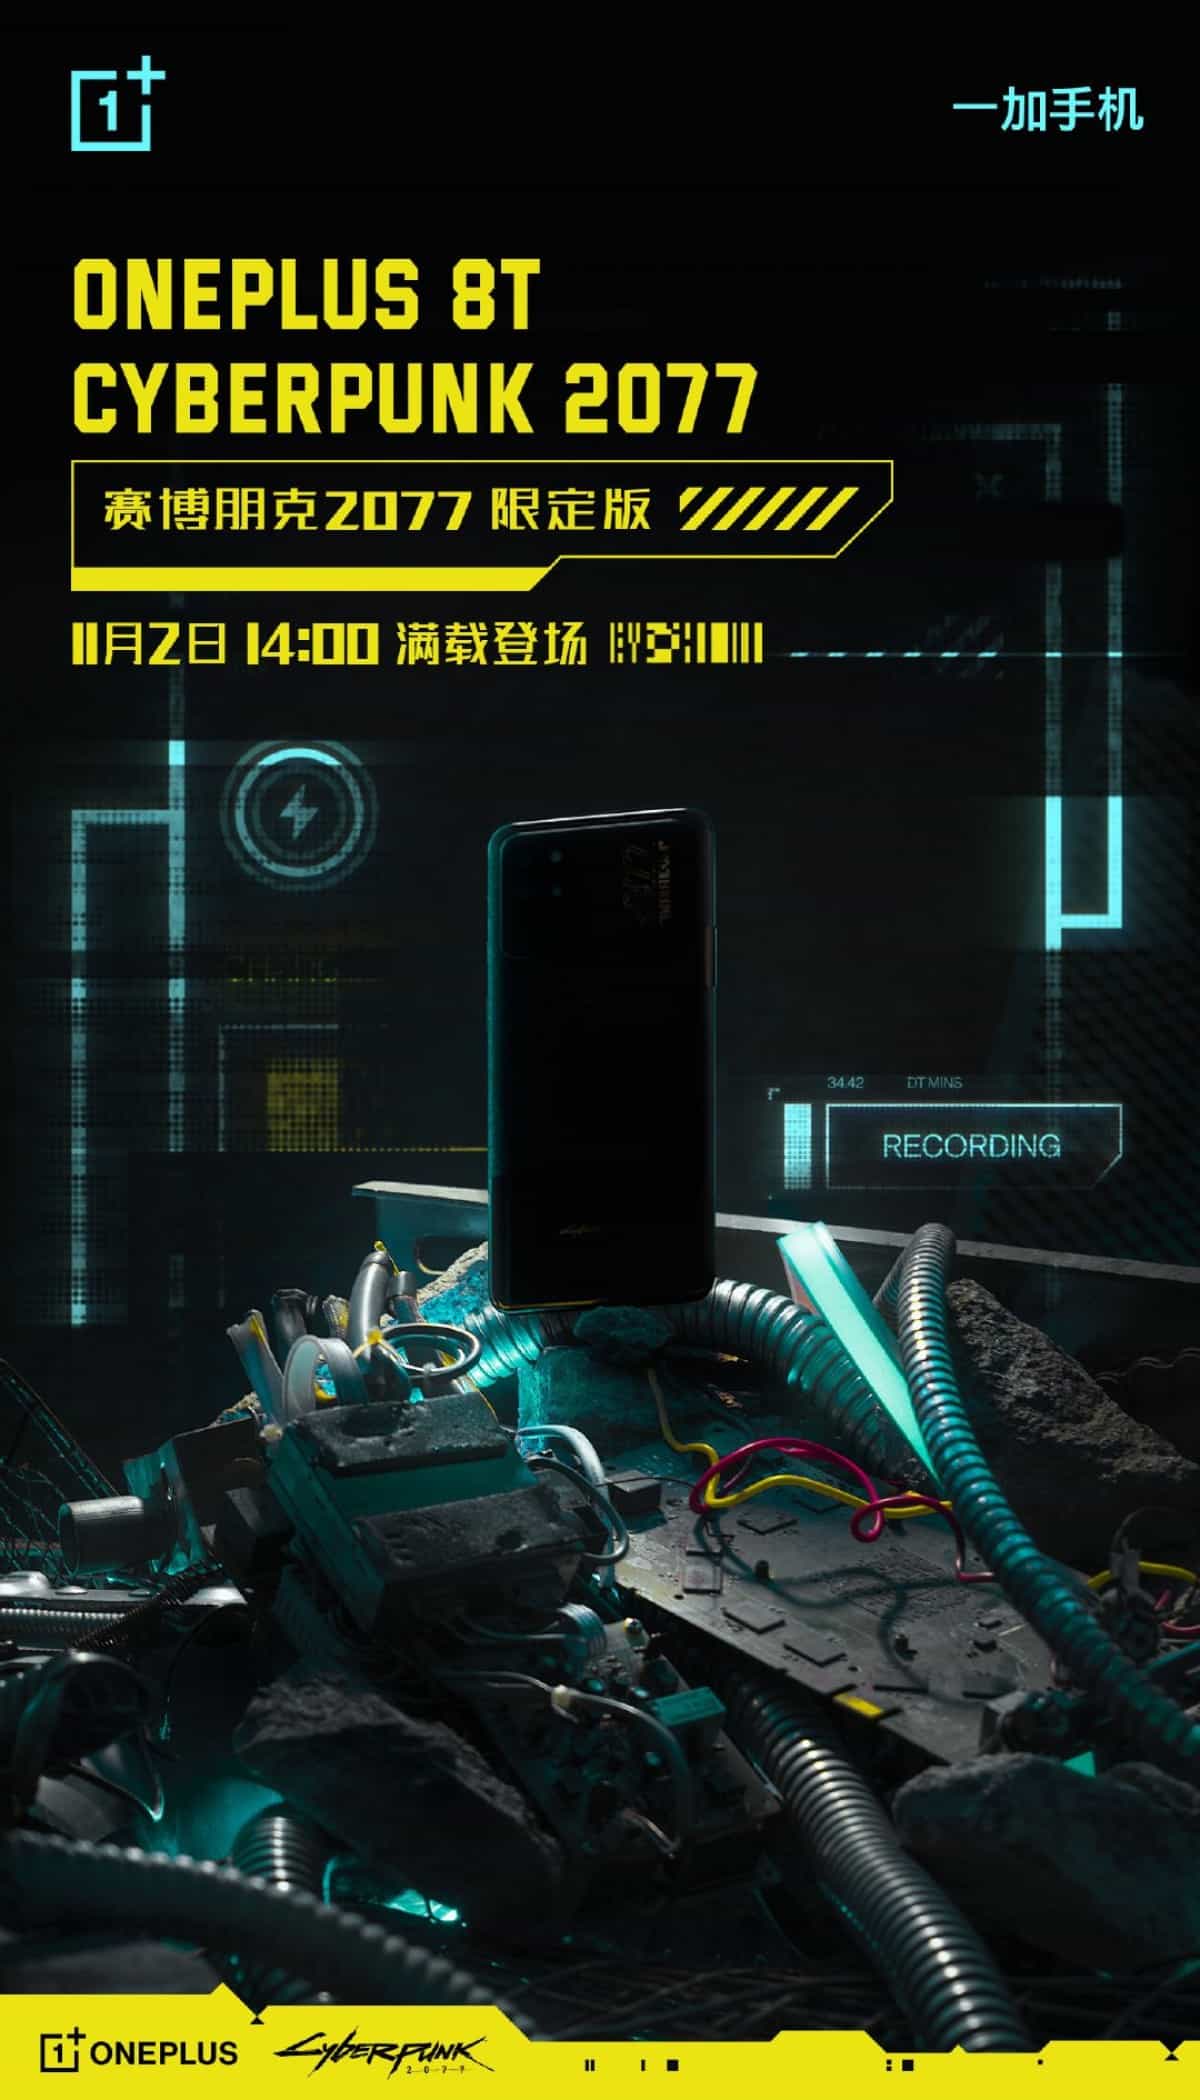 وان‌پلاس هنگام معرفی وانپلاس 8 تی اعلام کرد این گوشی نسخه Cyberpunk 2077 ادیشن خواهد داشت. حال شرکت مذکور تاریخ معرفی این گوشی را 12 آبان مشخص کرده است.